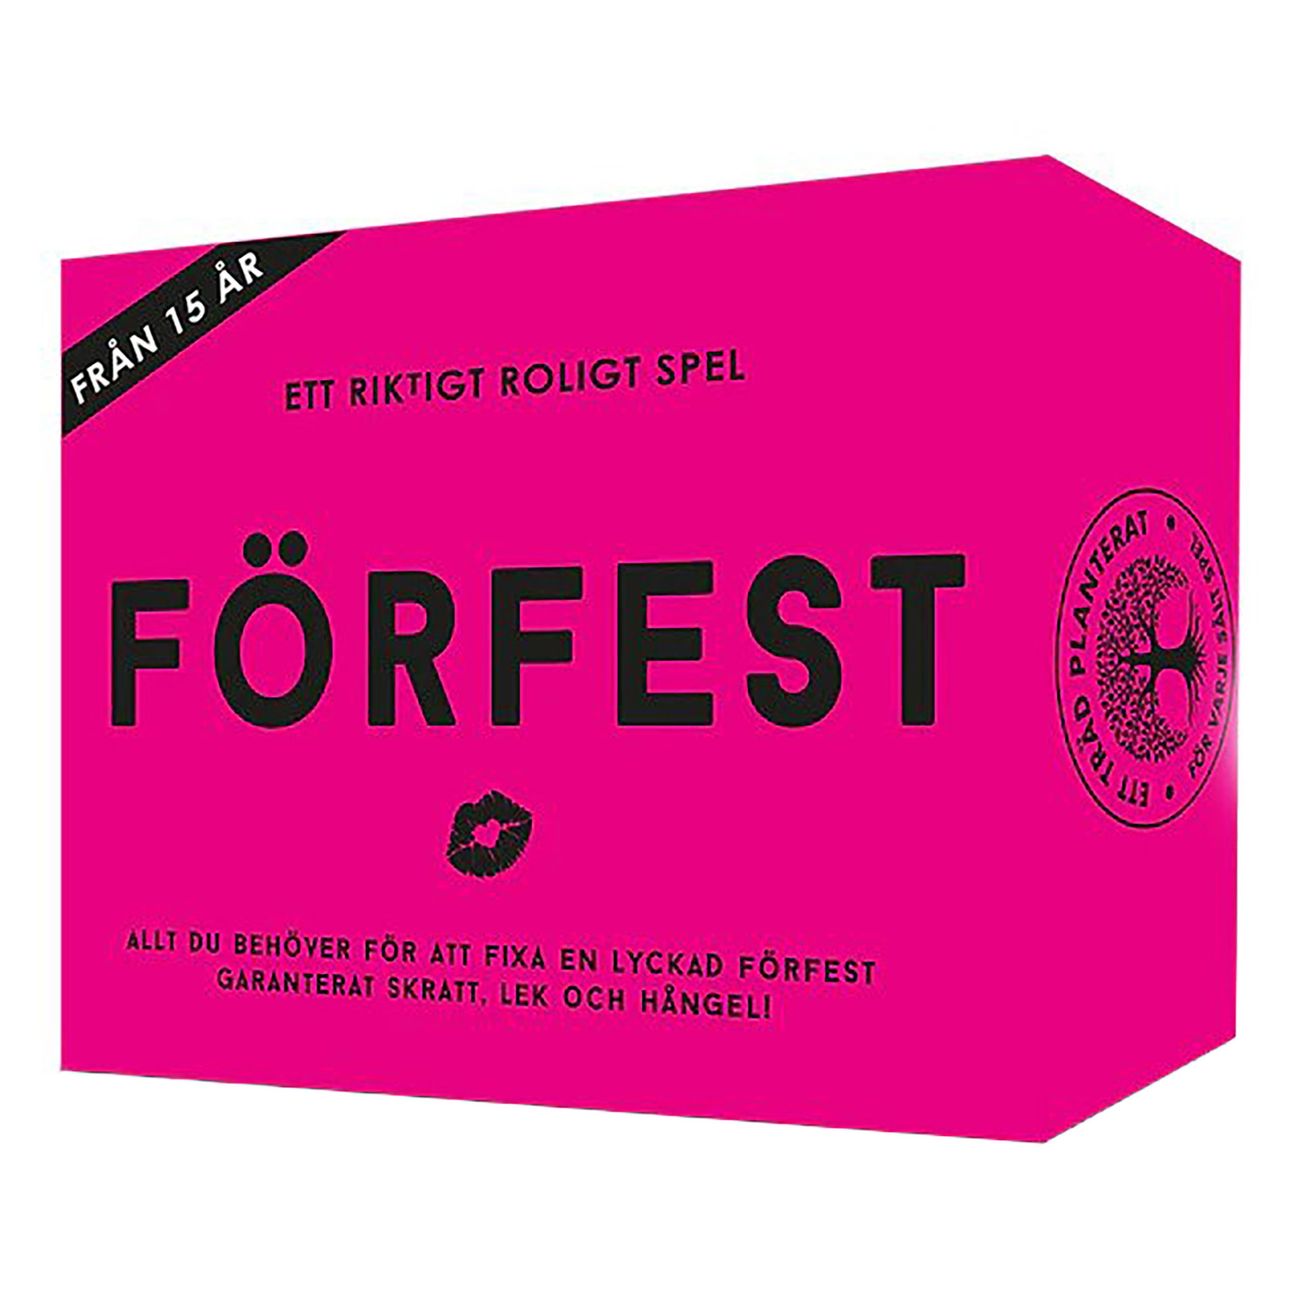 forfest-festspel-85151-1